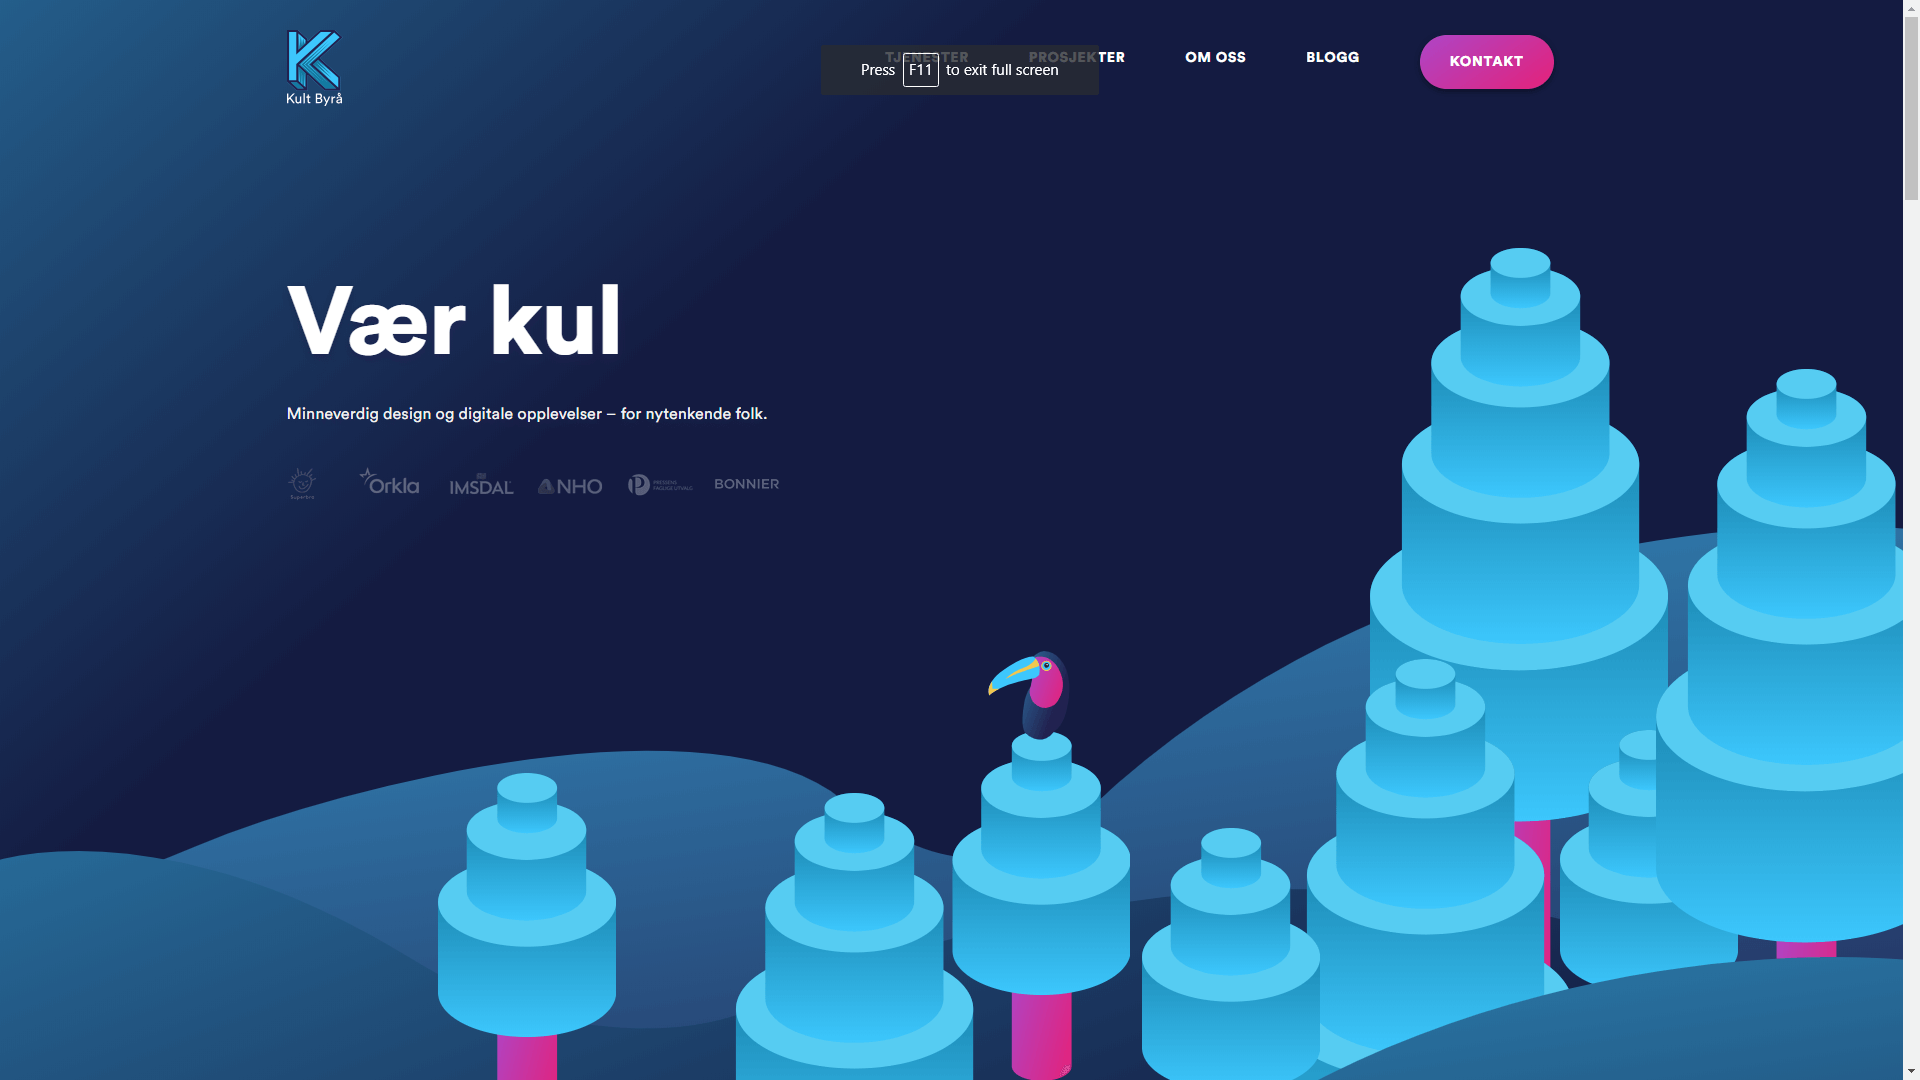 Домашняя страница сайта с интересным дизайном в цветовой гамме.